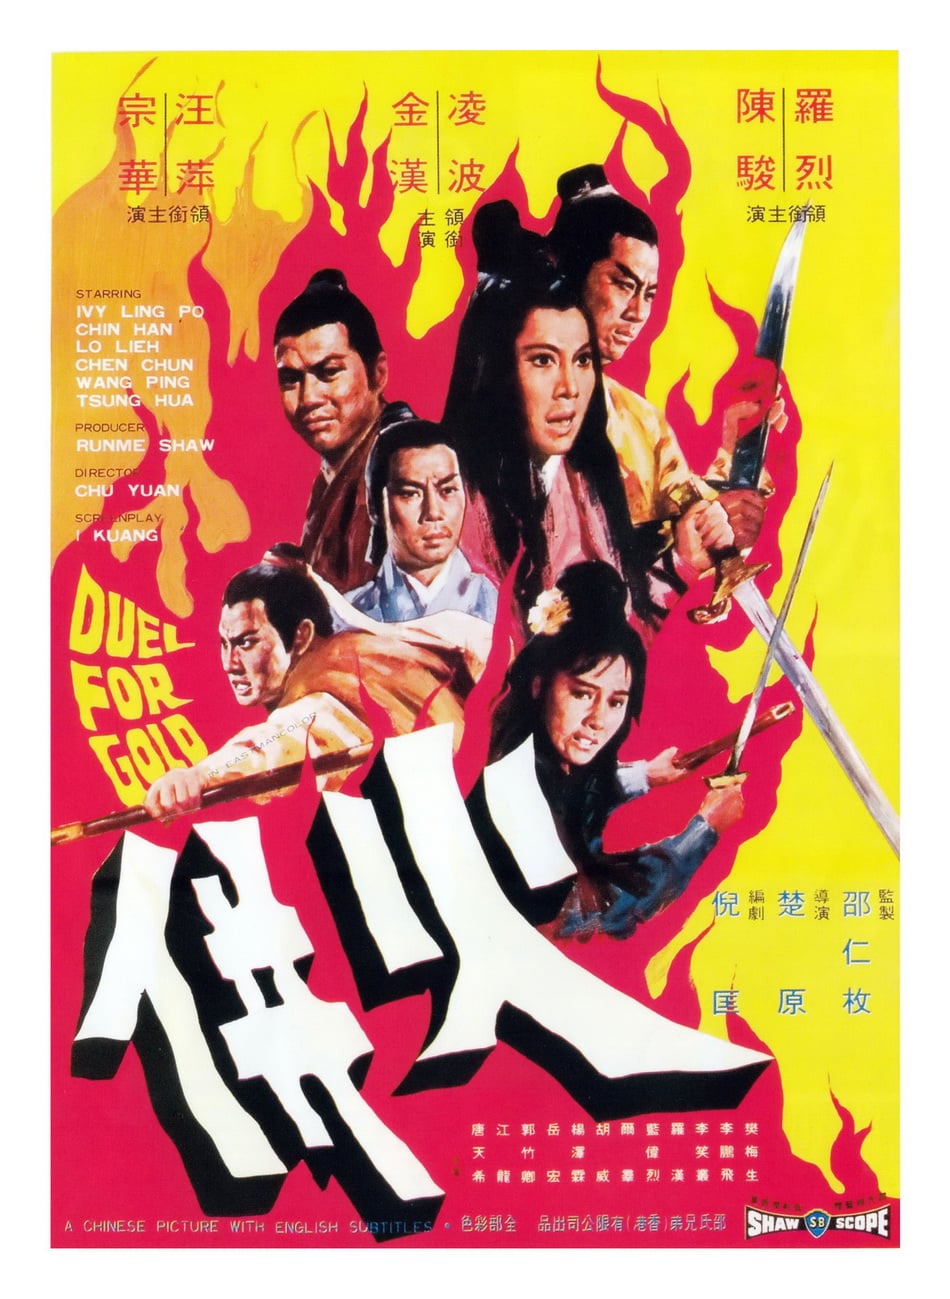 ดูหนังออนไลน์ฟรี Duel for Gold (Huo bing) (1971) ร้อยเหี้ยม